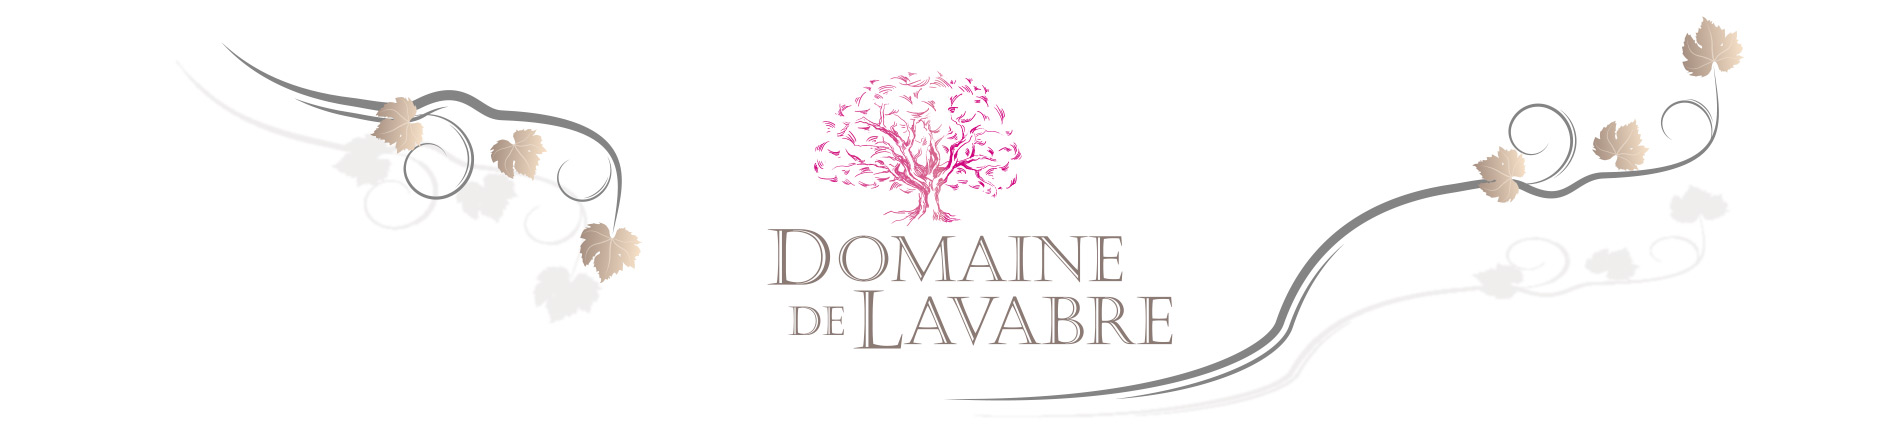 Bloc marque et logo avec le design du Domaine de Lavabre - Vins